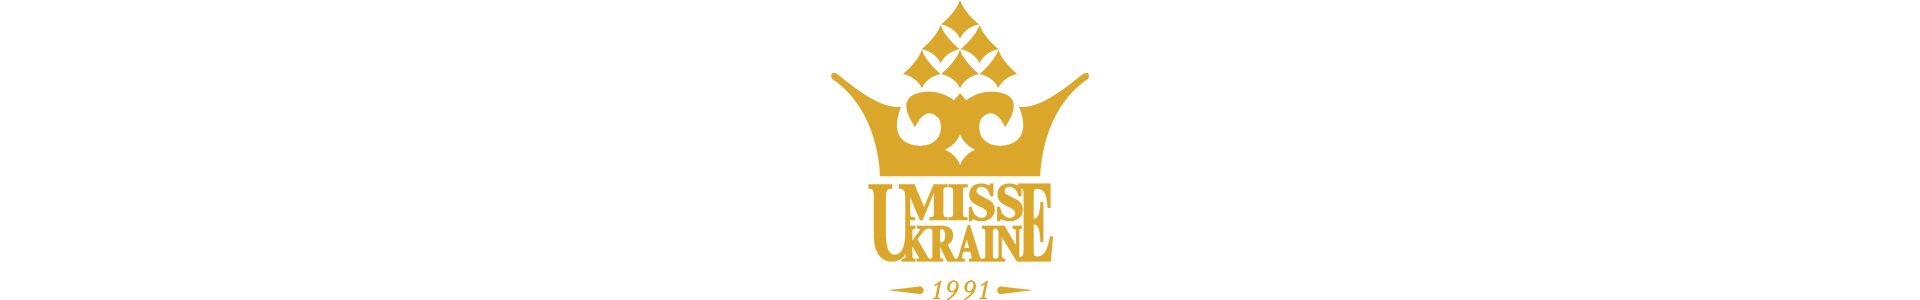 Міс Україна 2016 Олександра Кучеренко потрапила до півфіналу конкурсу талантів Міс Світу